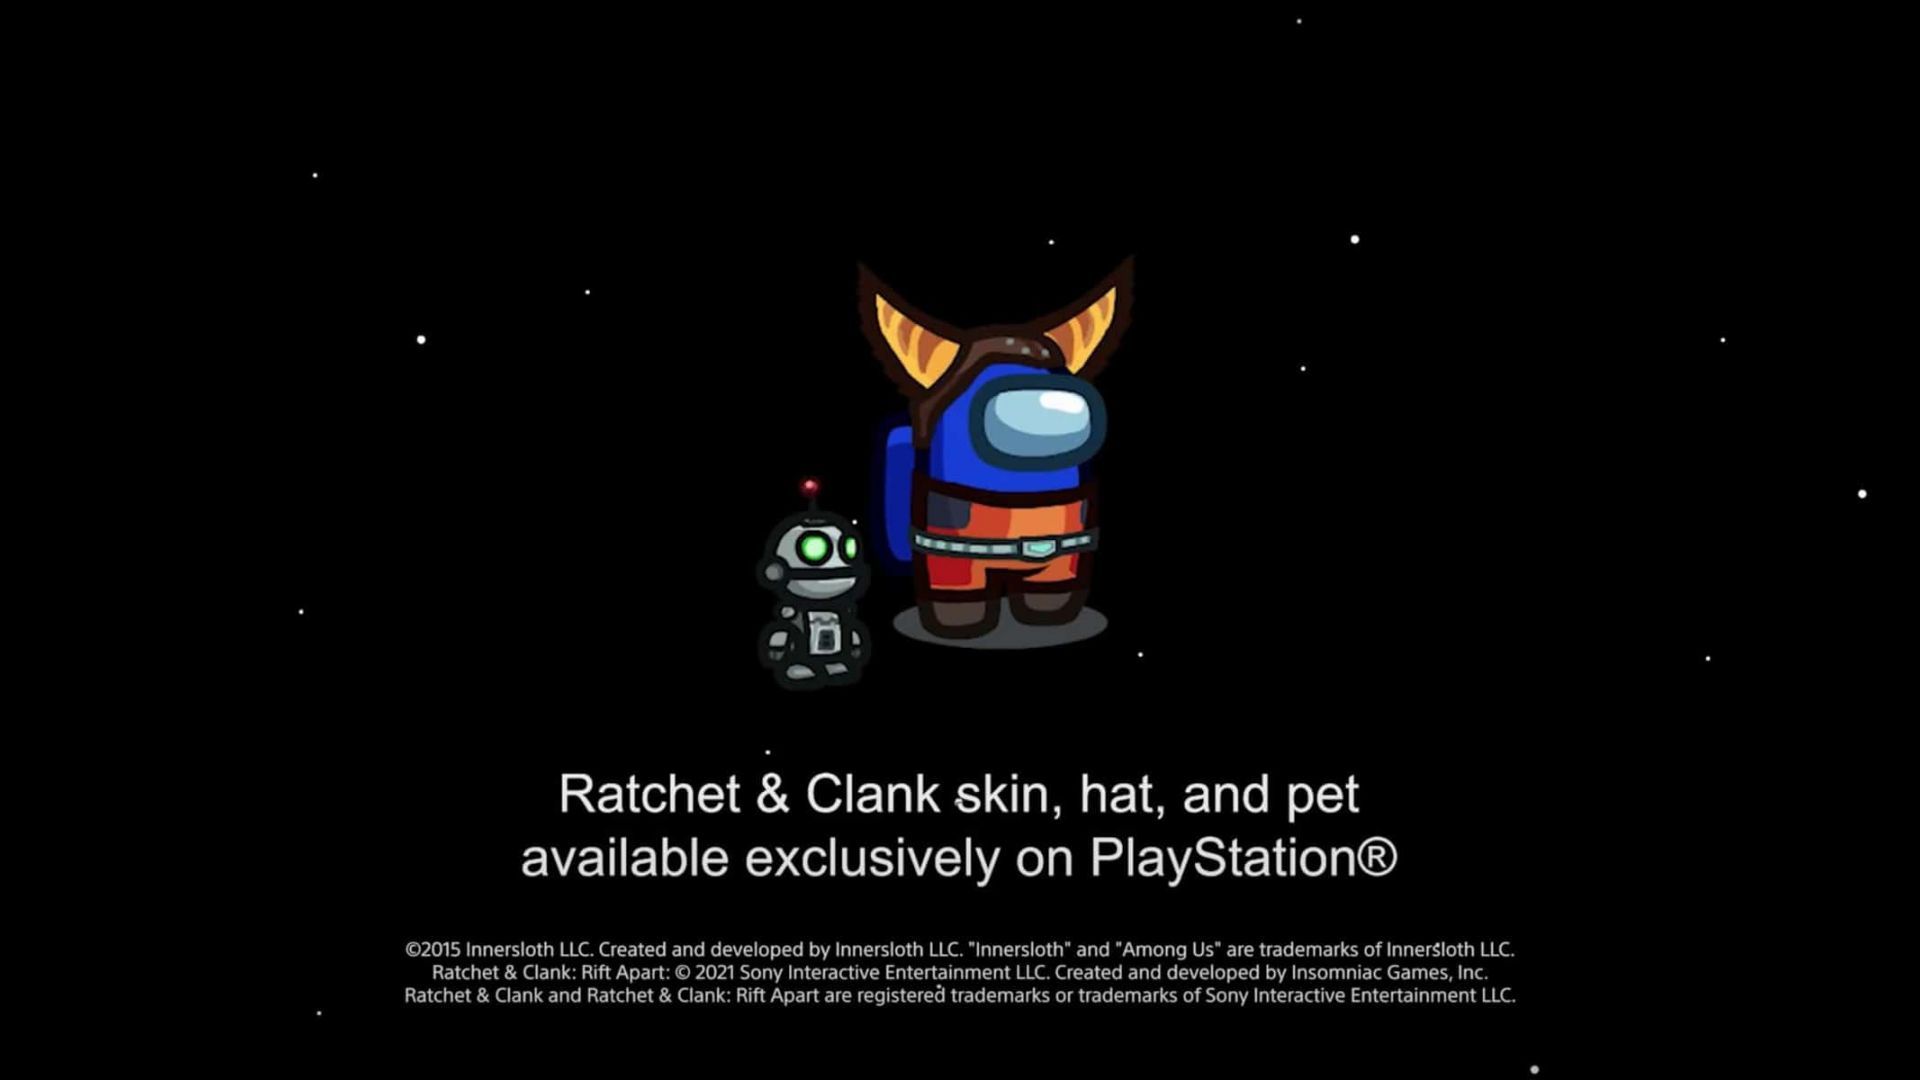 Among Us sur PS5 et PS4 avec des bonus exclusifs aux couleurs de Ratchet & Clank